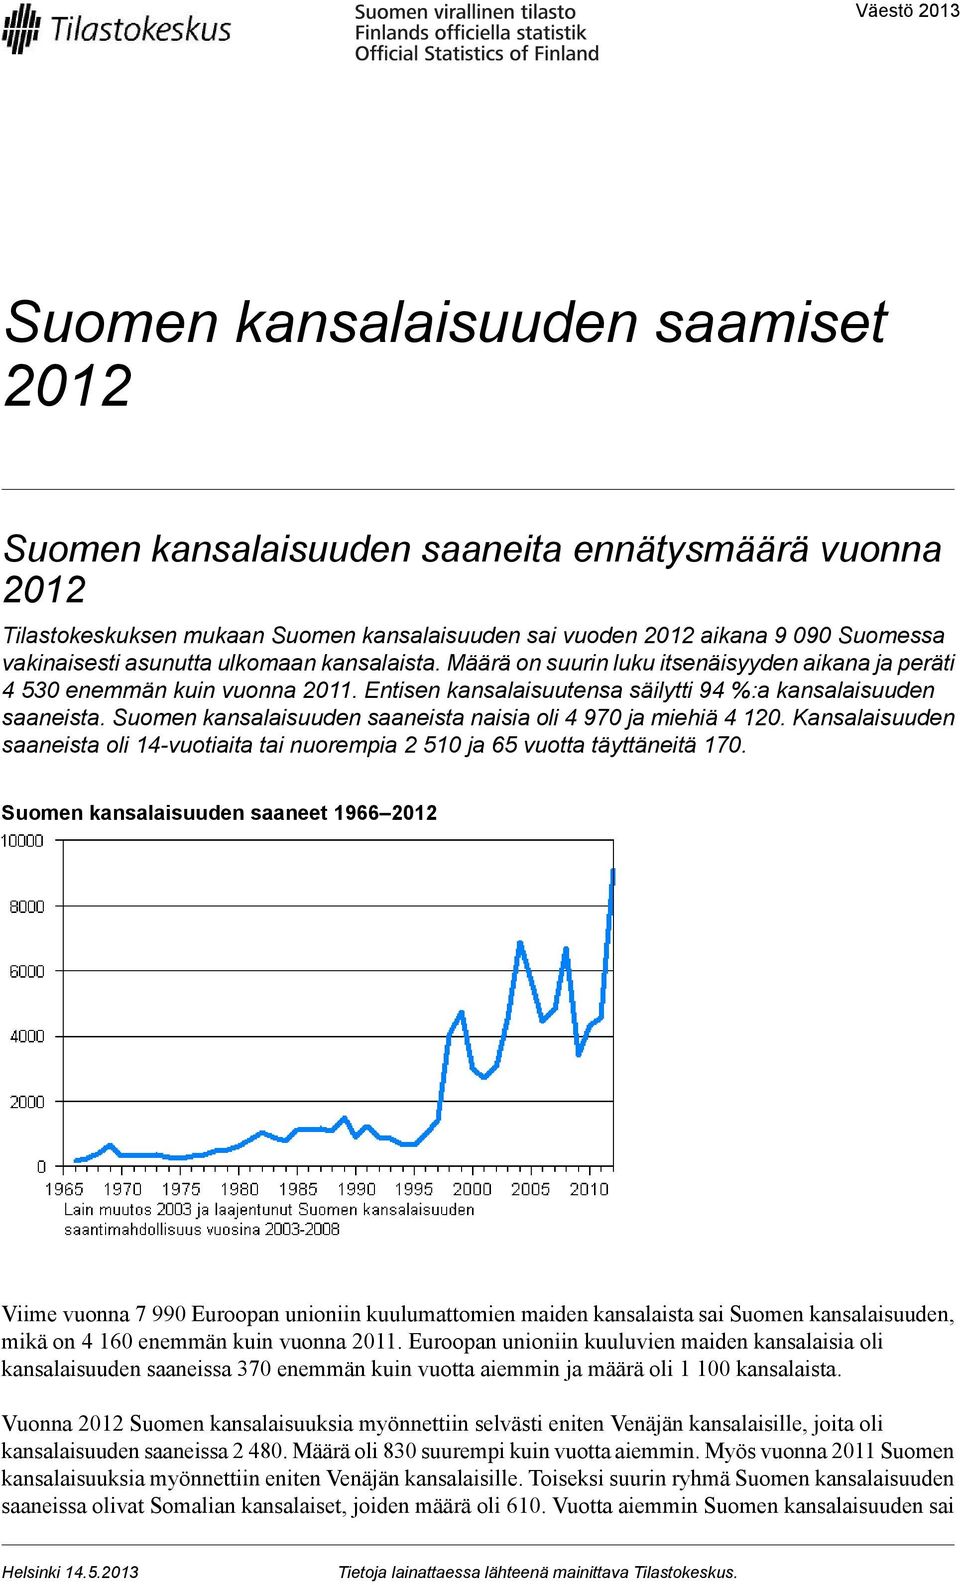 Suomen kansalaisuuden saaneista naisia oli 4 90 ja miehiä 4 10. Kansalaisuuden saaneista oli 14vuotiaita tai nuorempia 510 ja 65 vuotta täyttäneitä 0.